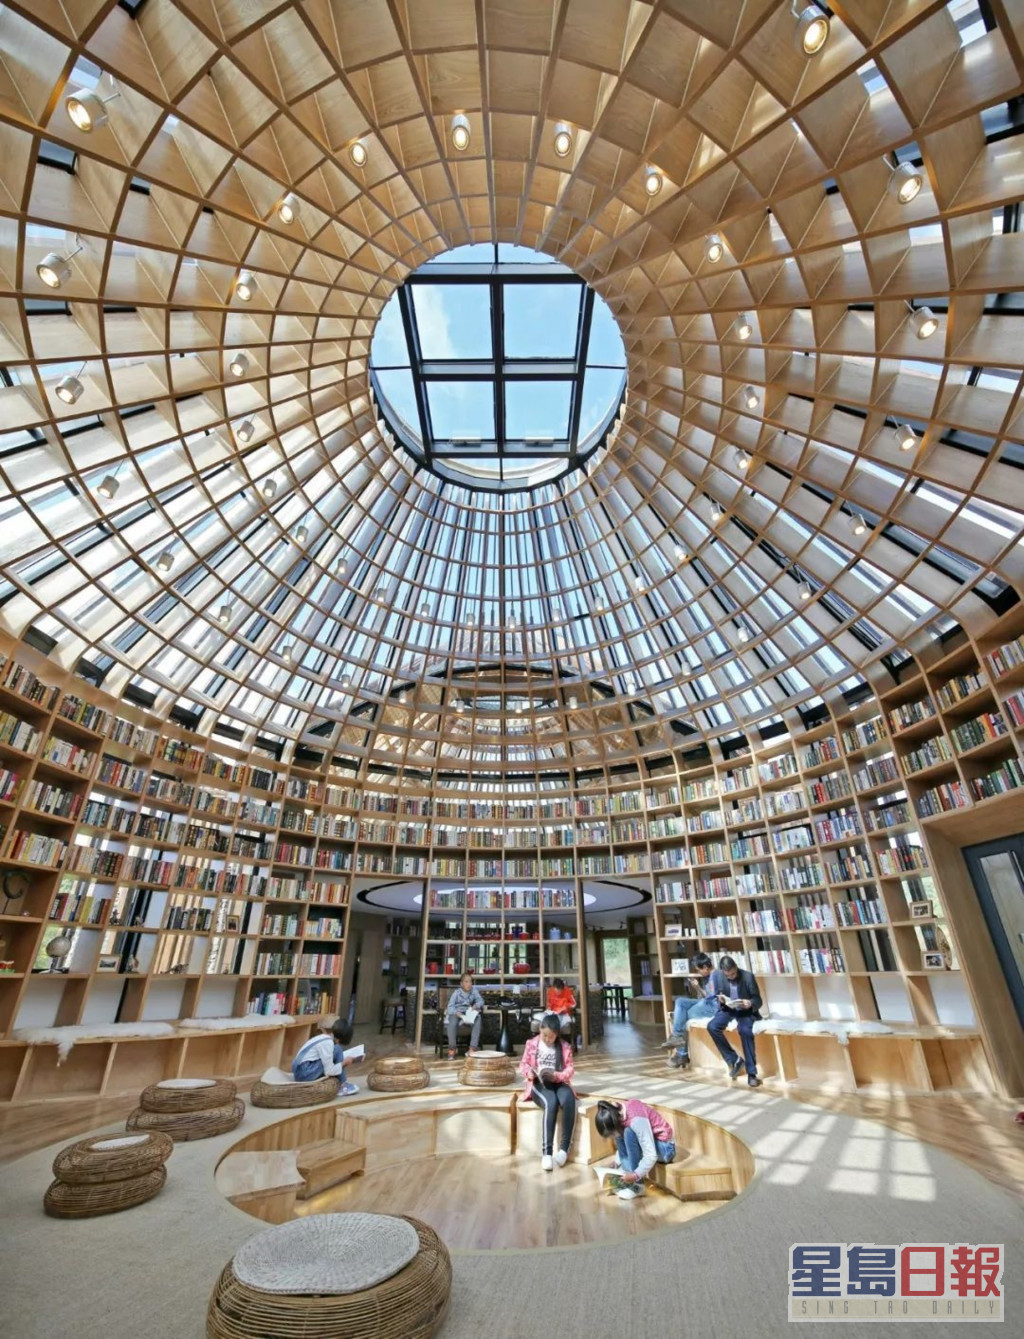 吳彥祖2017年拍內地節目《漂亮的房子》一手一腳自己建成的草原星空圖書館「木蘭坊」，入圍有「建築界奧斯卡」之稱的英國皇家建築師學會獎。